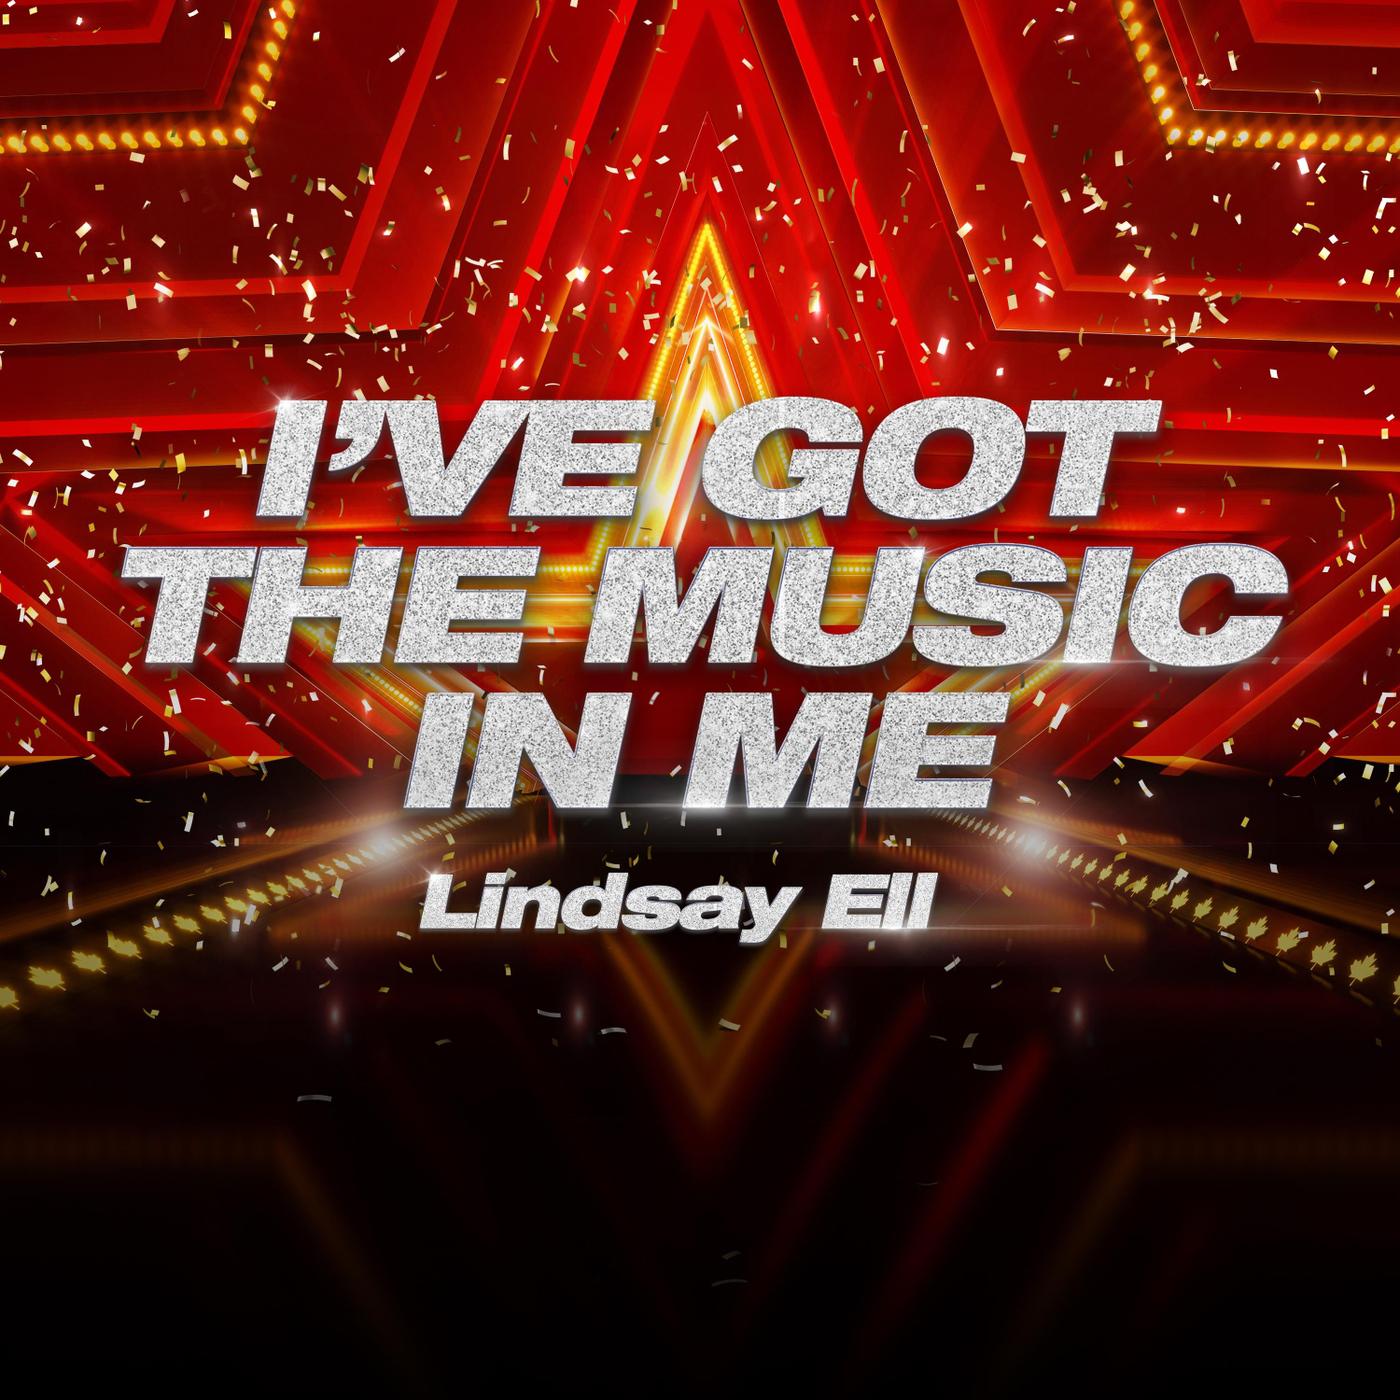 Lindsay Ell - I've Got the Music in Me